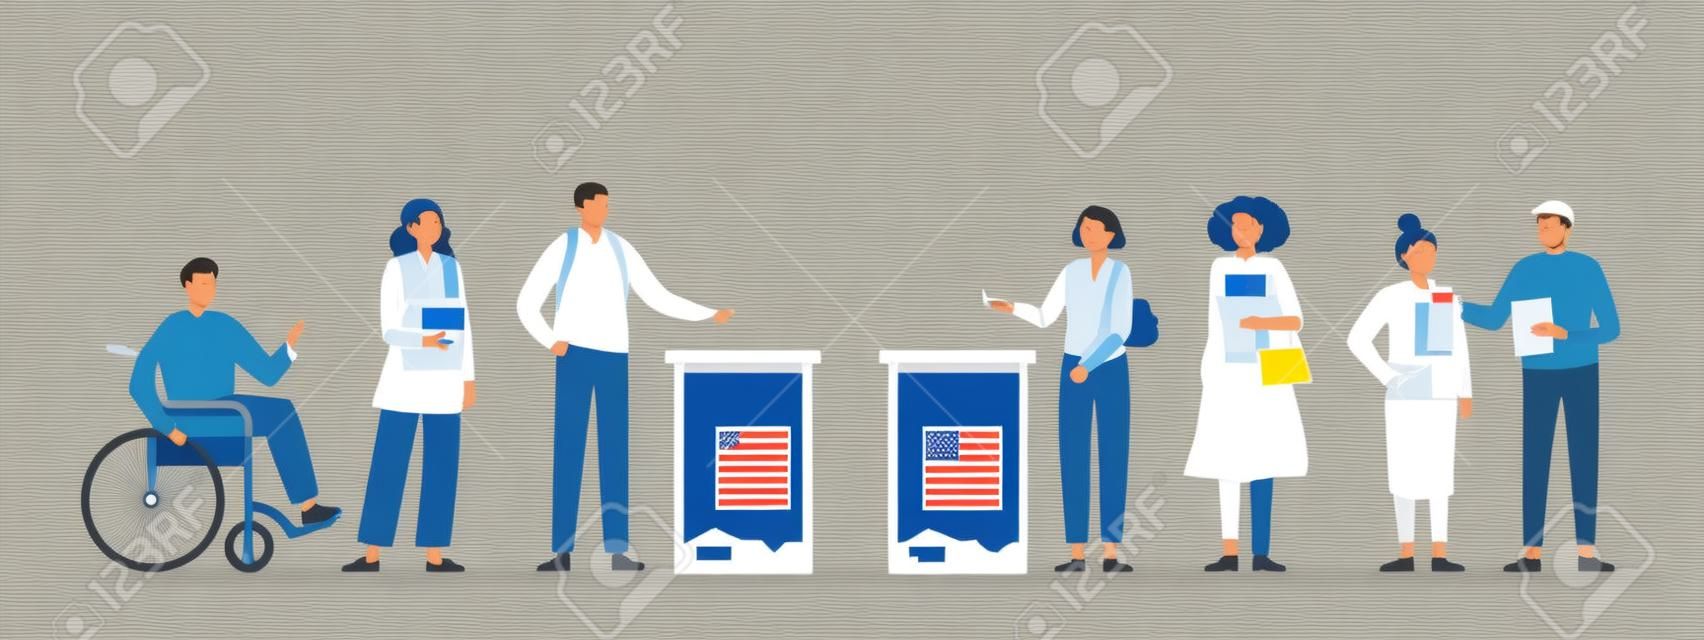 Koncepcja dnia wyborów. różni wyborcy oddający głosy w lokalu wyborczym. mężczyźni i kobiety wkładają papierowe karty do głosowania do urny wyborczej. demokratyczne wybory. płaska ilustracja wektorowa.